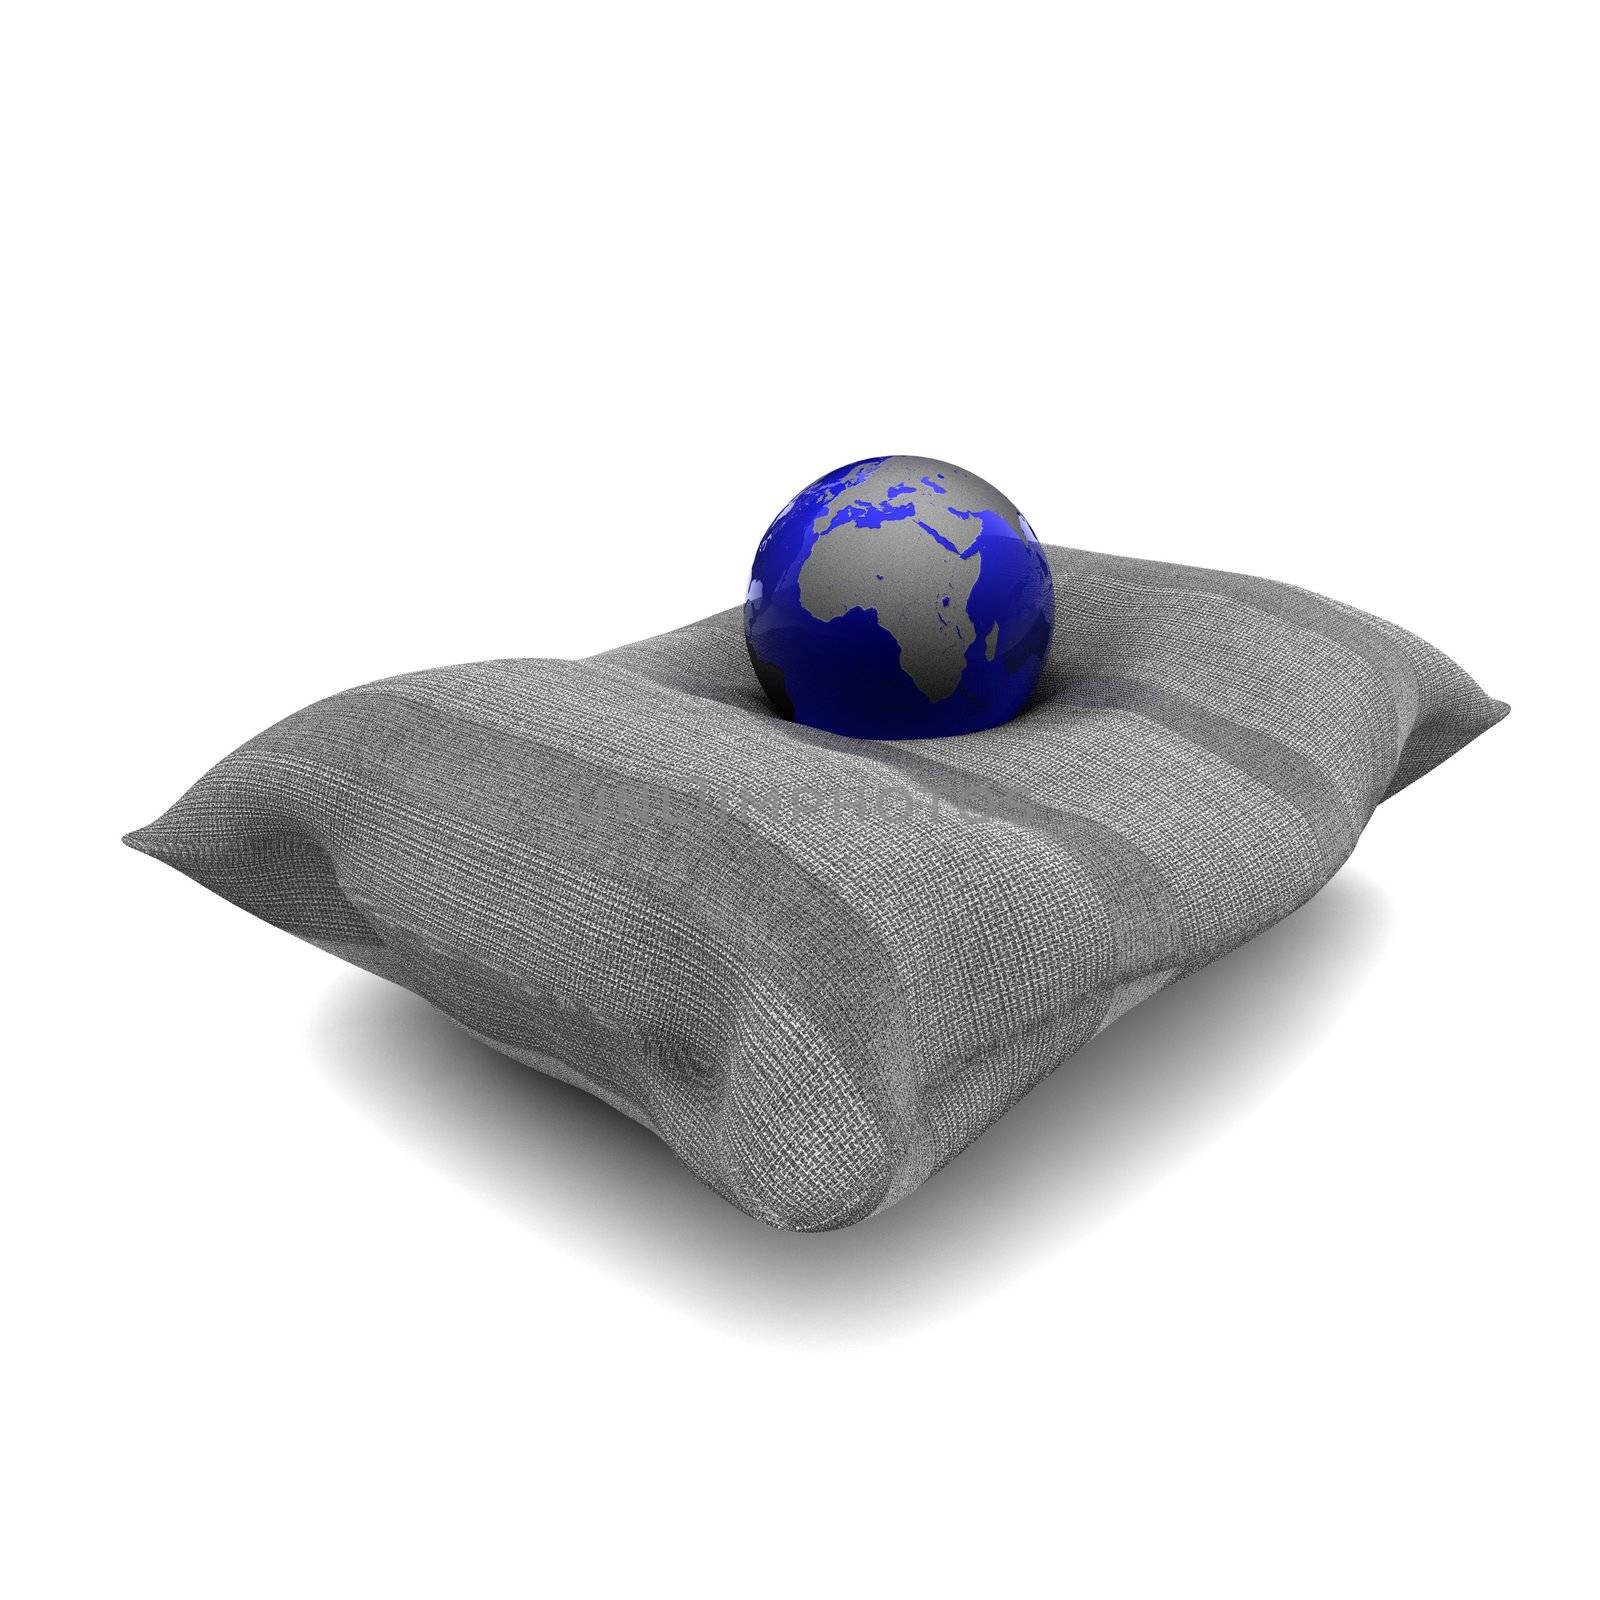 A crystal earth on a soft cushion